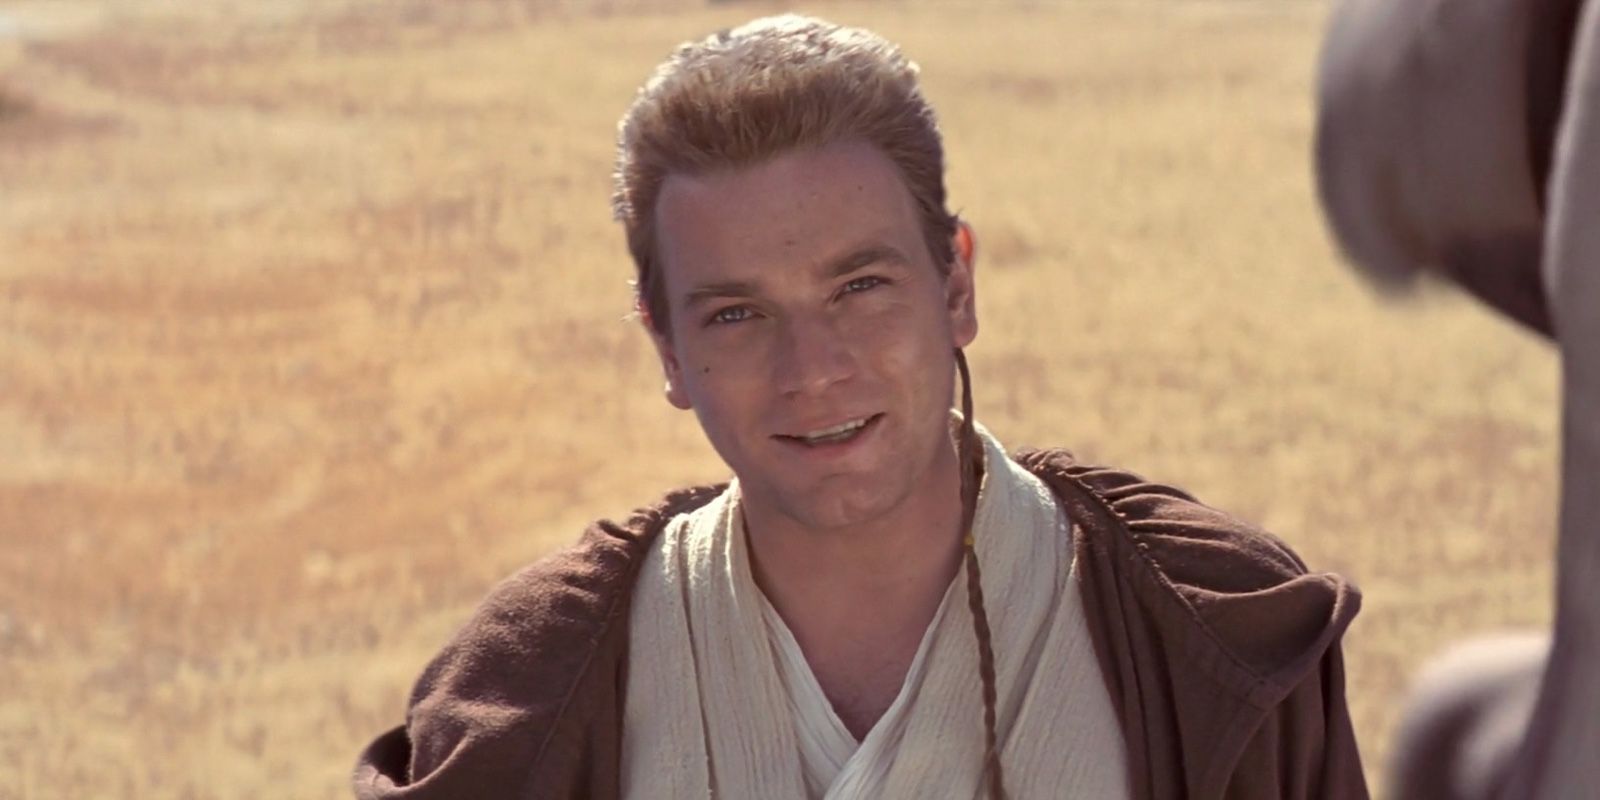 Ewan McGregor as Obi Wan Kenobi in The Phantom Menace